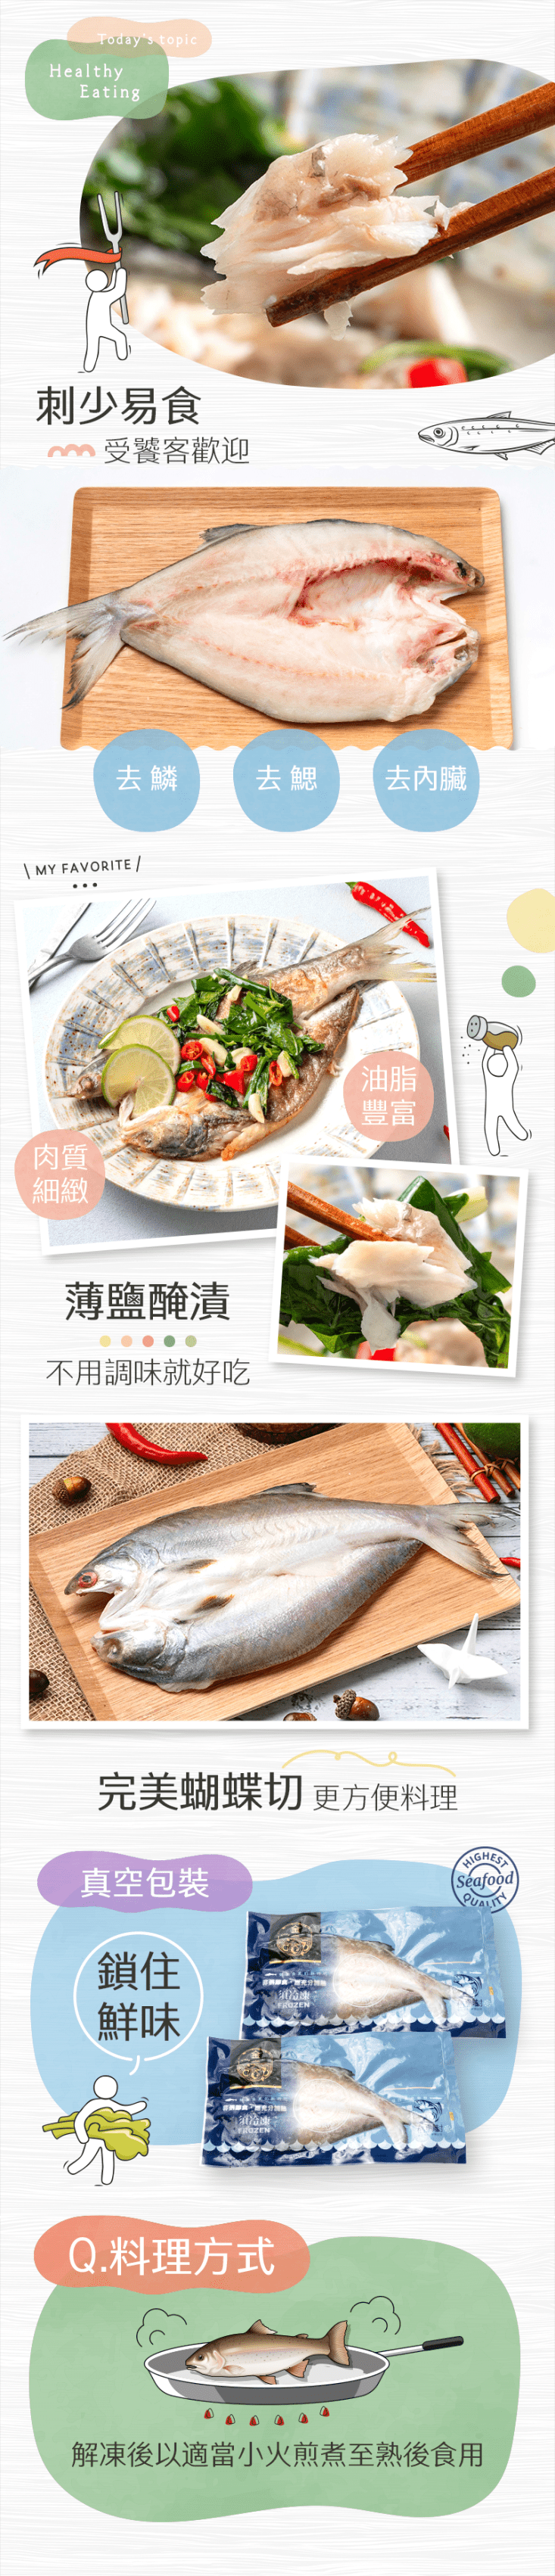 【生活好漁】嚴選極品午仔魚一夜干(270g/包) 贈調味鯖魚